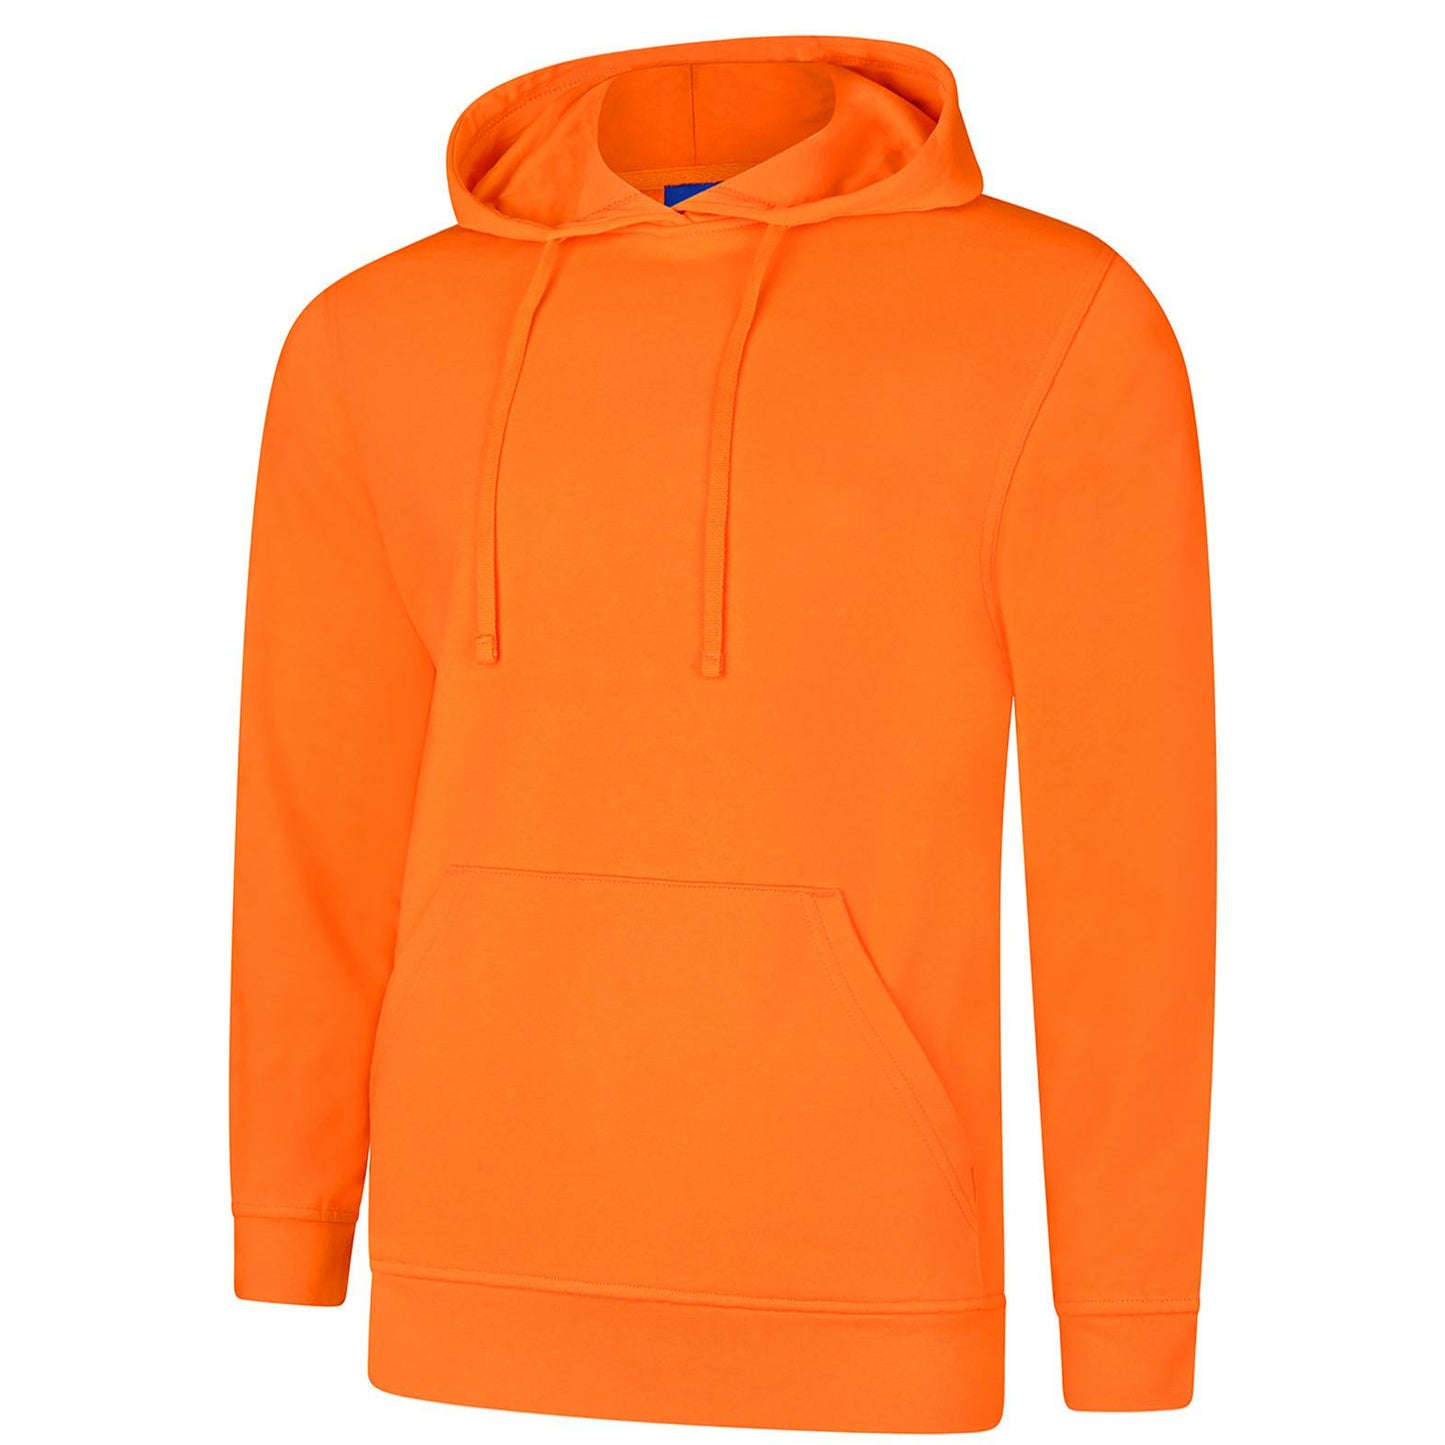 Deluxe Hooded Sweatshirt (L - 2XL) Orange